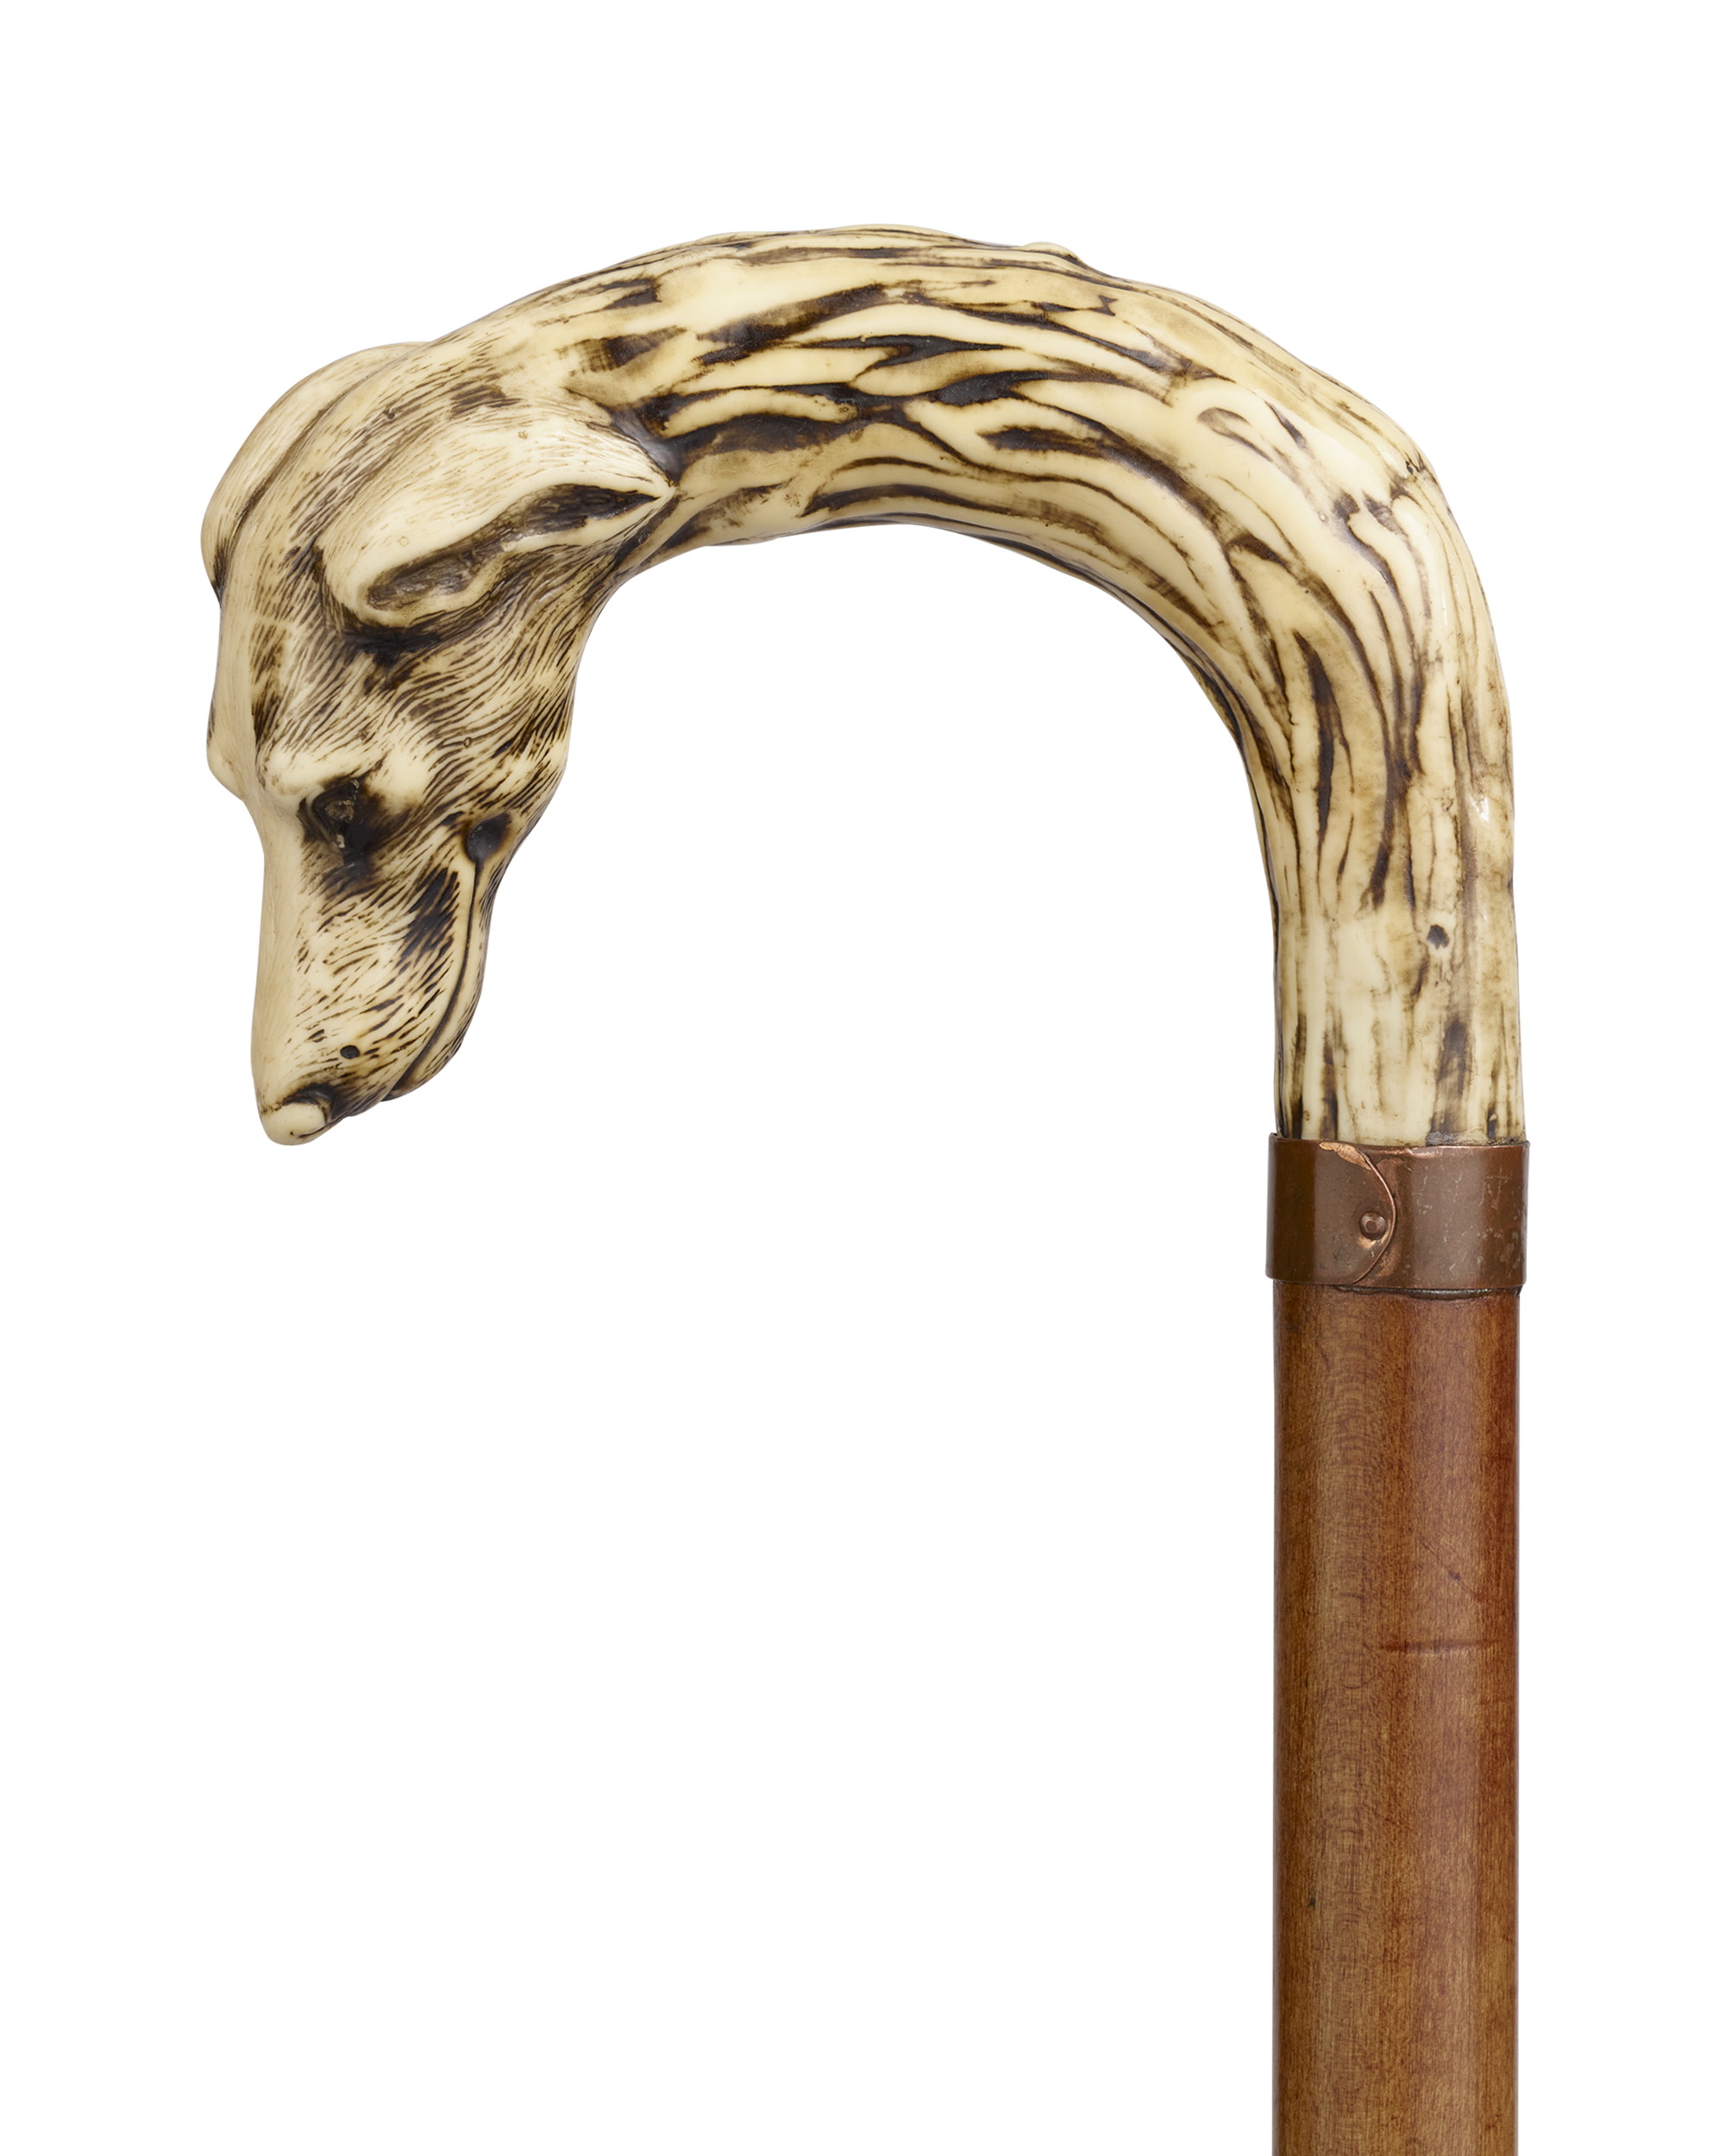 Carved Antler Greyhound Cane